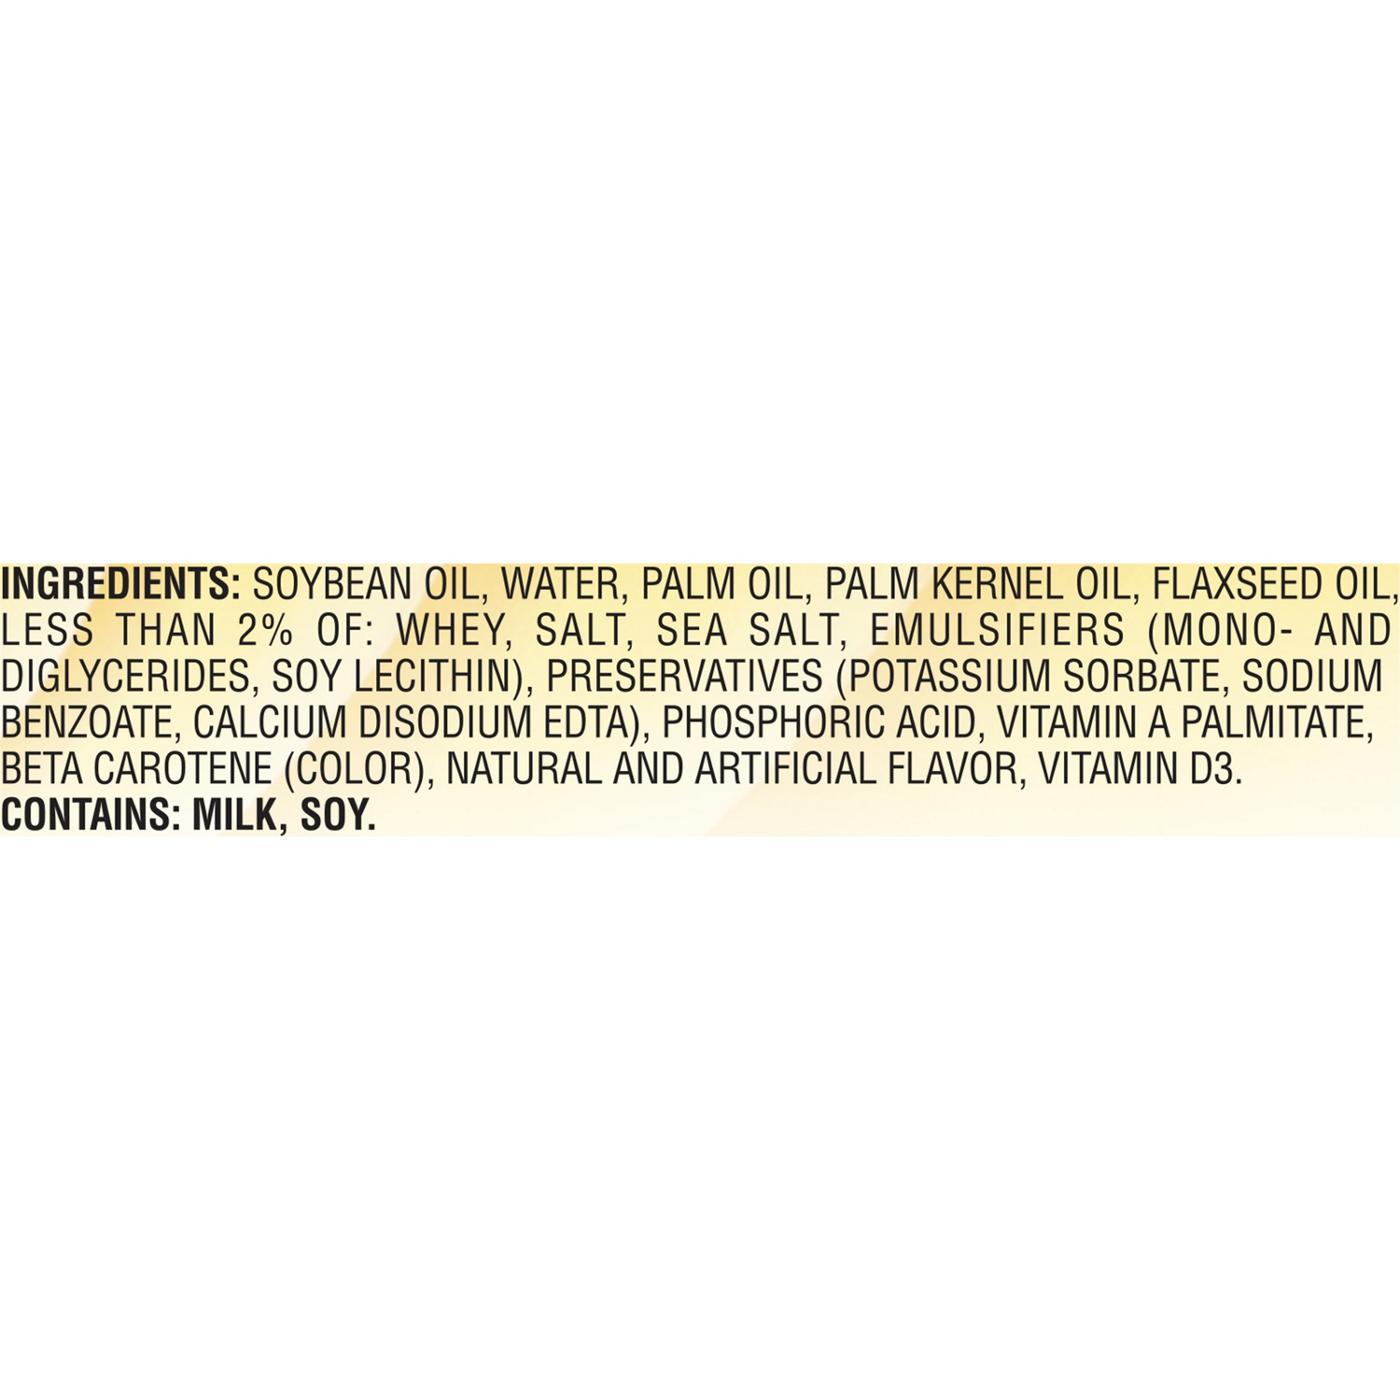 Fleischmann's Original Soft Margarine; image 2 of 4